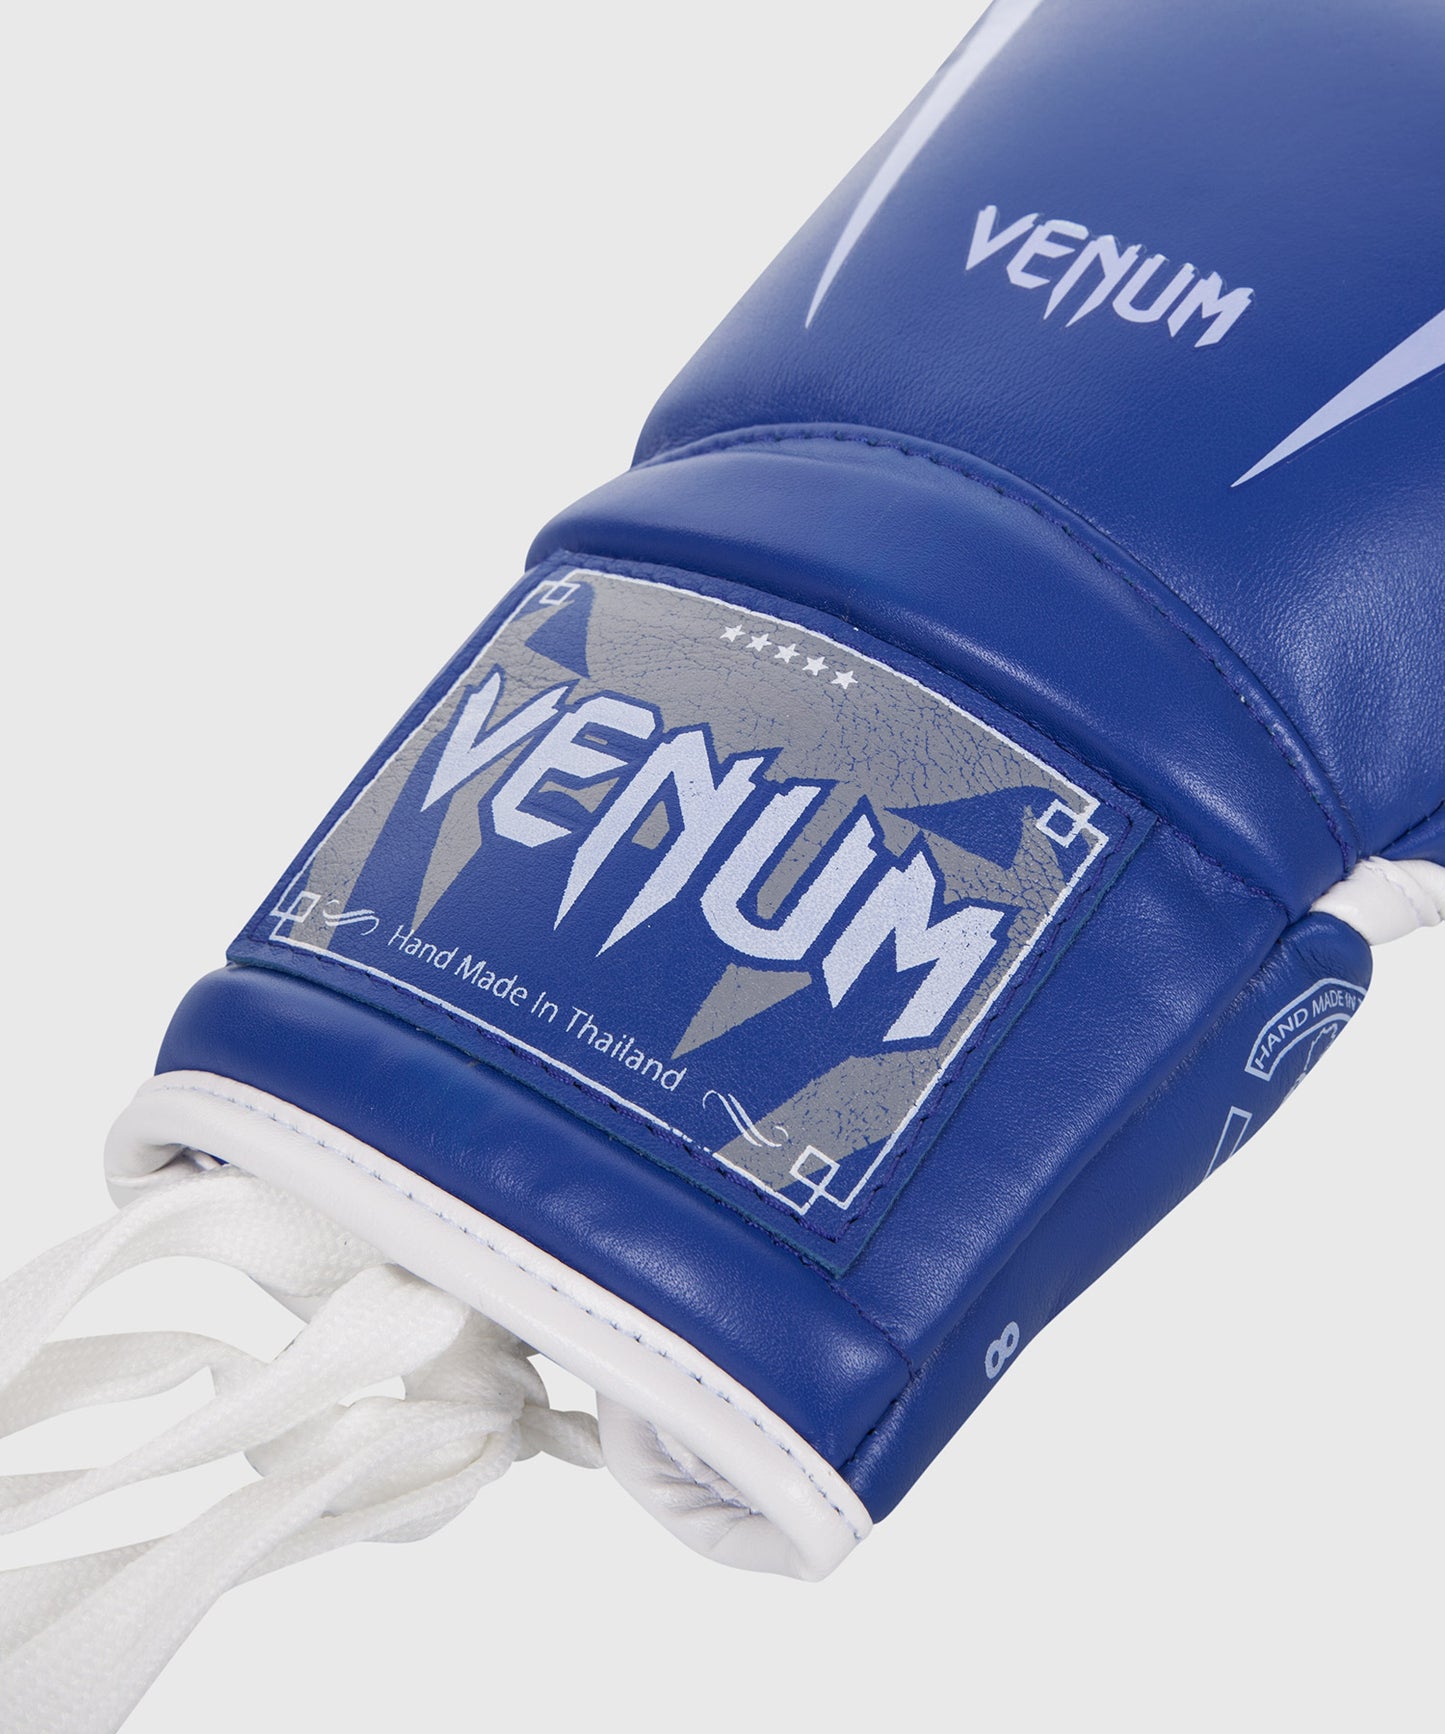 Guantes de Boxeo Venum Giant 3.0 - Cuero Nappa - Con cordones - Azul